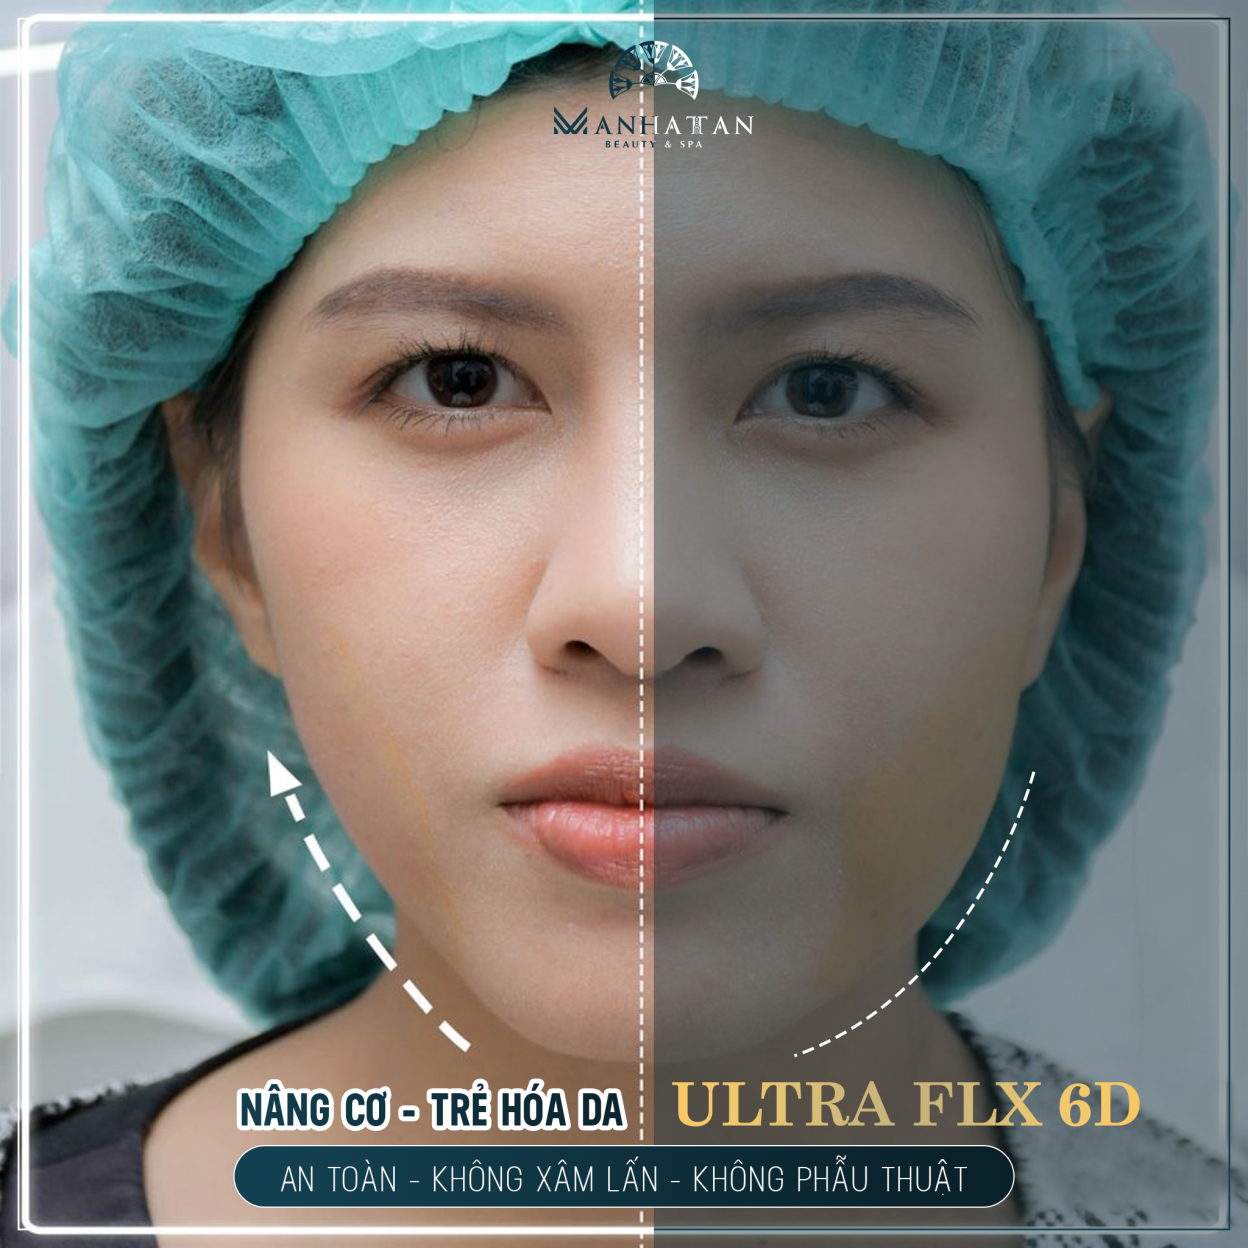 Khắc phục da lão hóa không cần phẫu thuật với công nghệ Ultra FLX 6D 2020, níu giữ thanh xuân